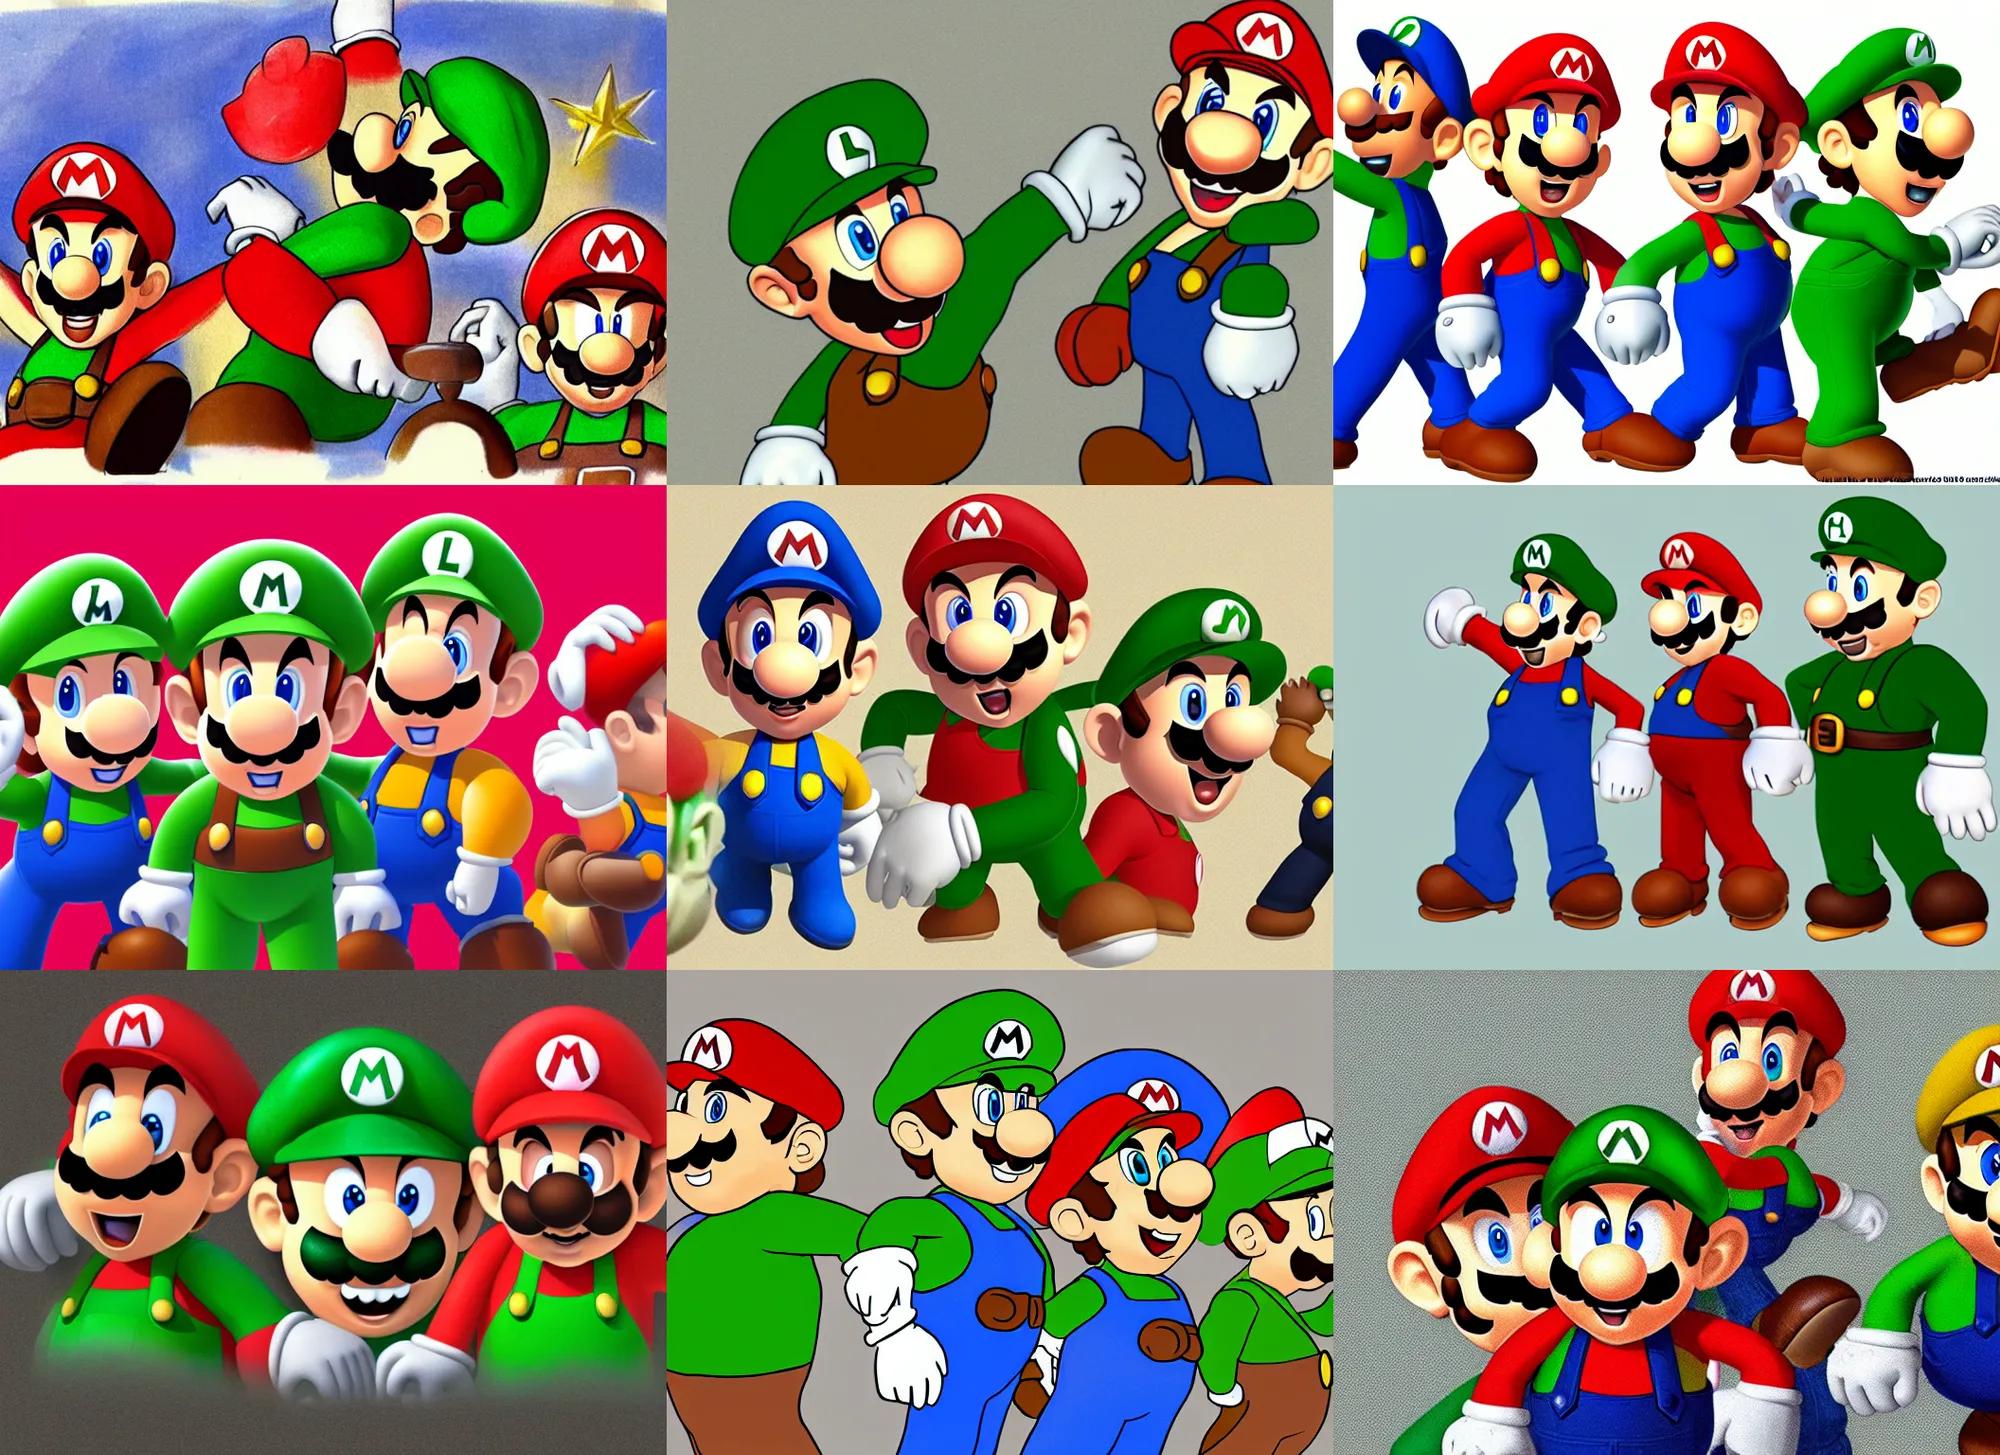 Prompt: Mario, Luigi and Pario, concept art